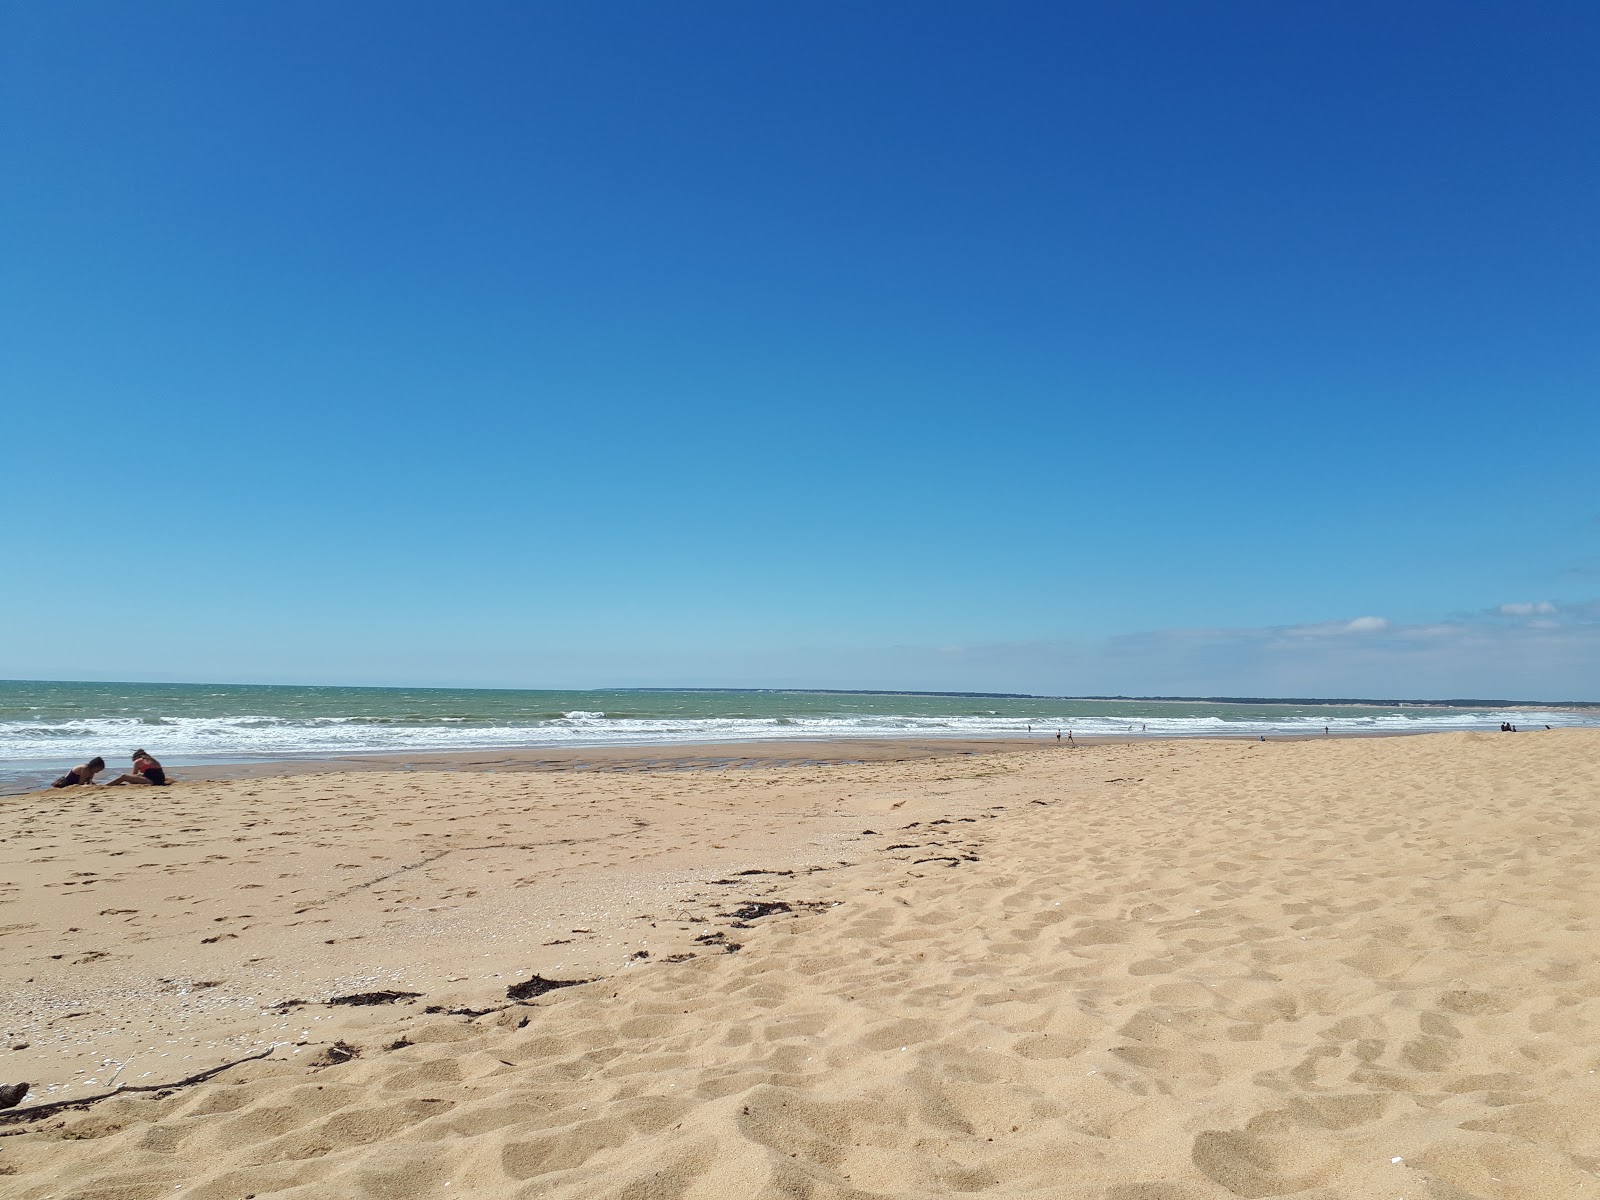 Zdjęcie Terriere beach z powierzchnią jasny piasek